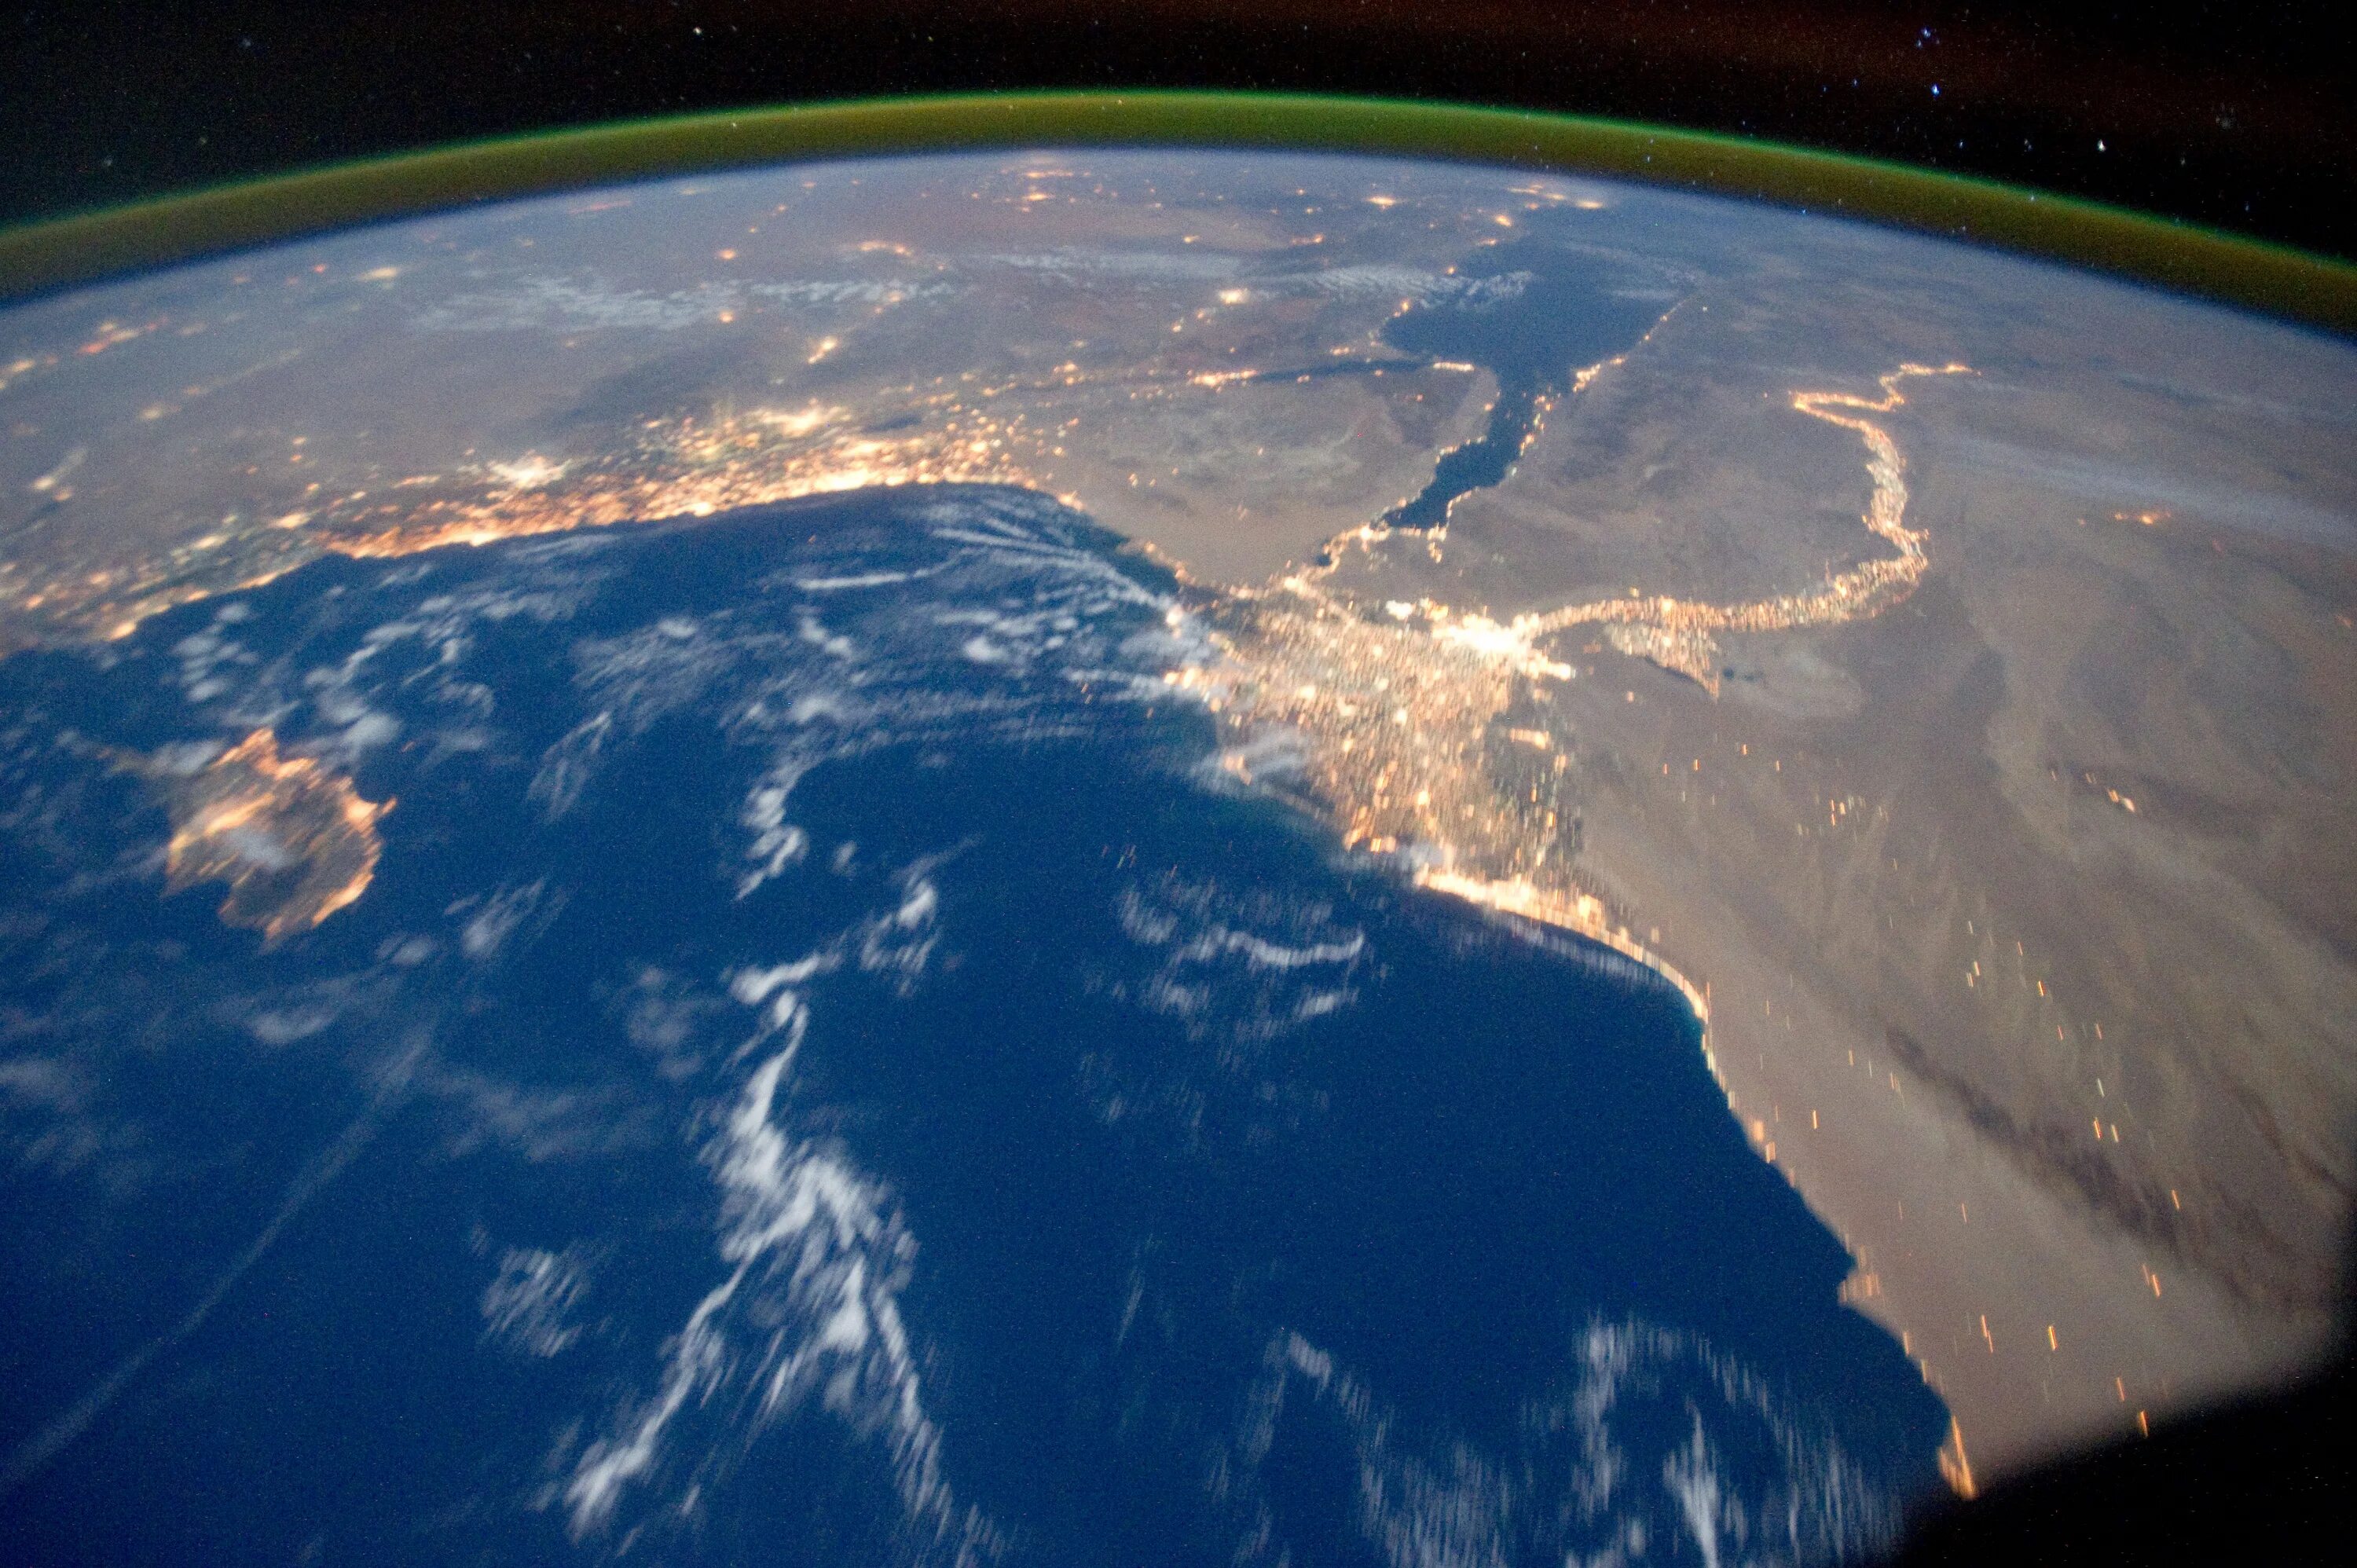 Обои реальном времени. Вид из космоса. Вид земли из космоса. О земле и космосе. Планета вид из космоса.